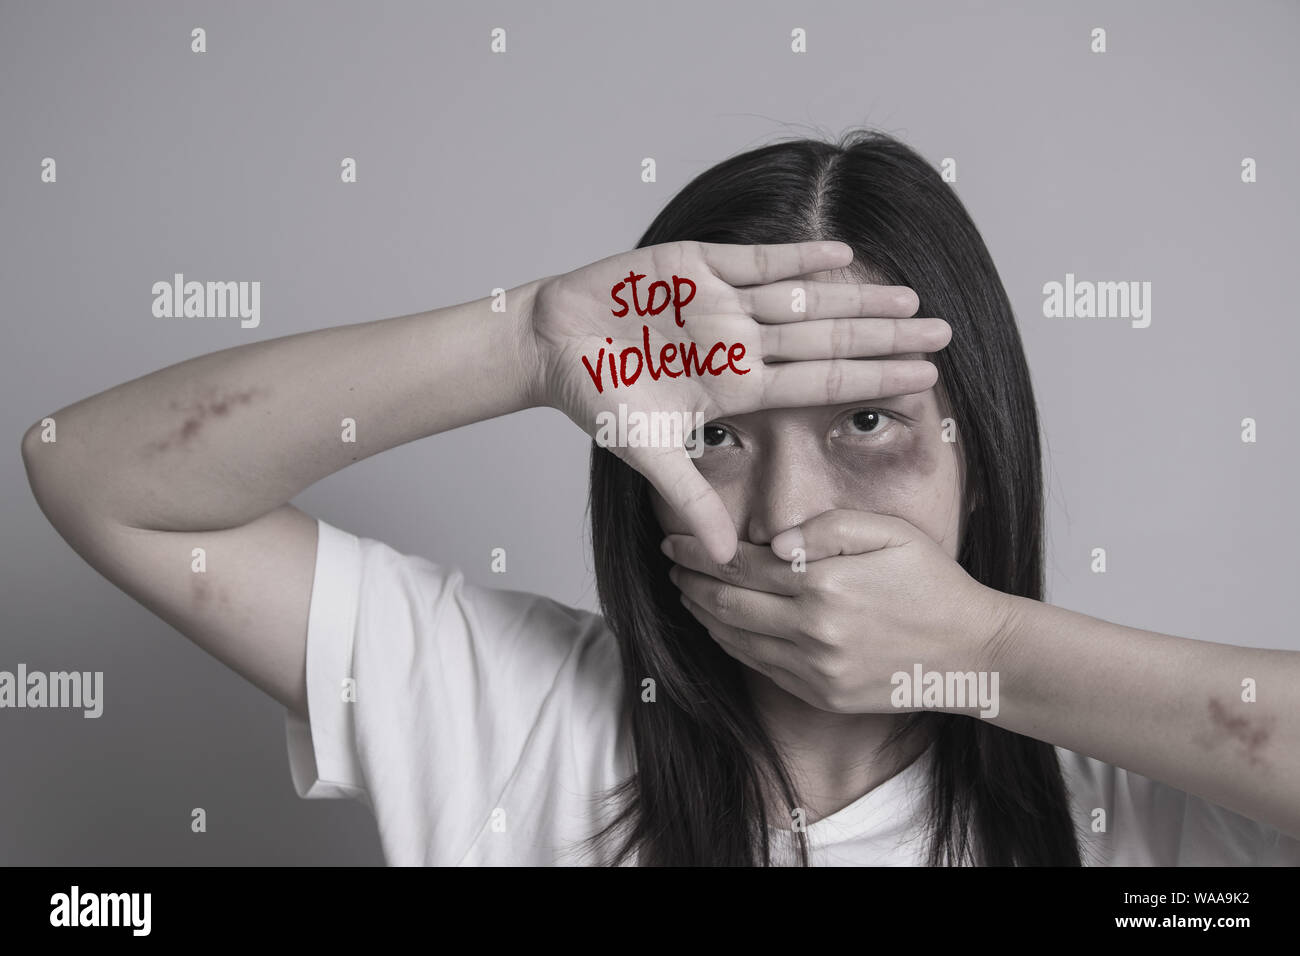 Stopp der Gewalt gegen Frauen Kampagne. Asien Frau mit Quetschung auf Arme und Gesicht mit einer Hand schließen Mund und mit der anderen Hand schreiben Sie das Wort Gewalt stoppen Stockfoto